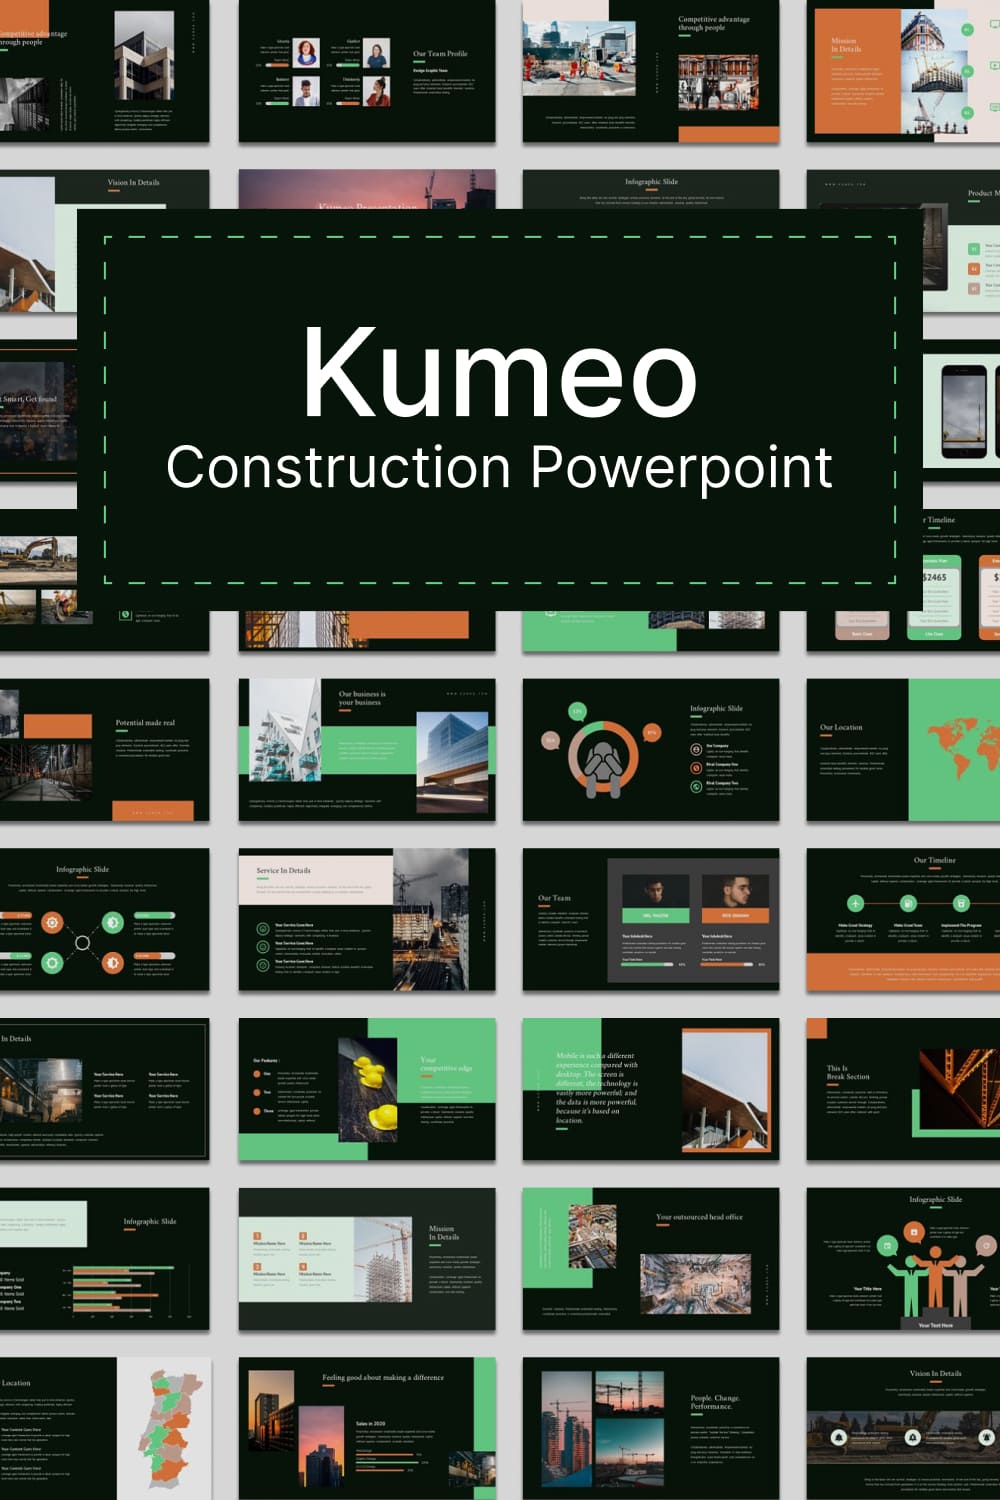 kumeo construction powerpoint 03